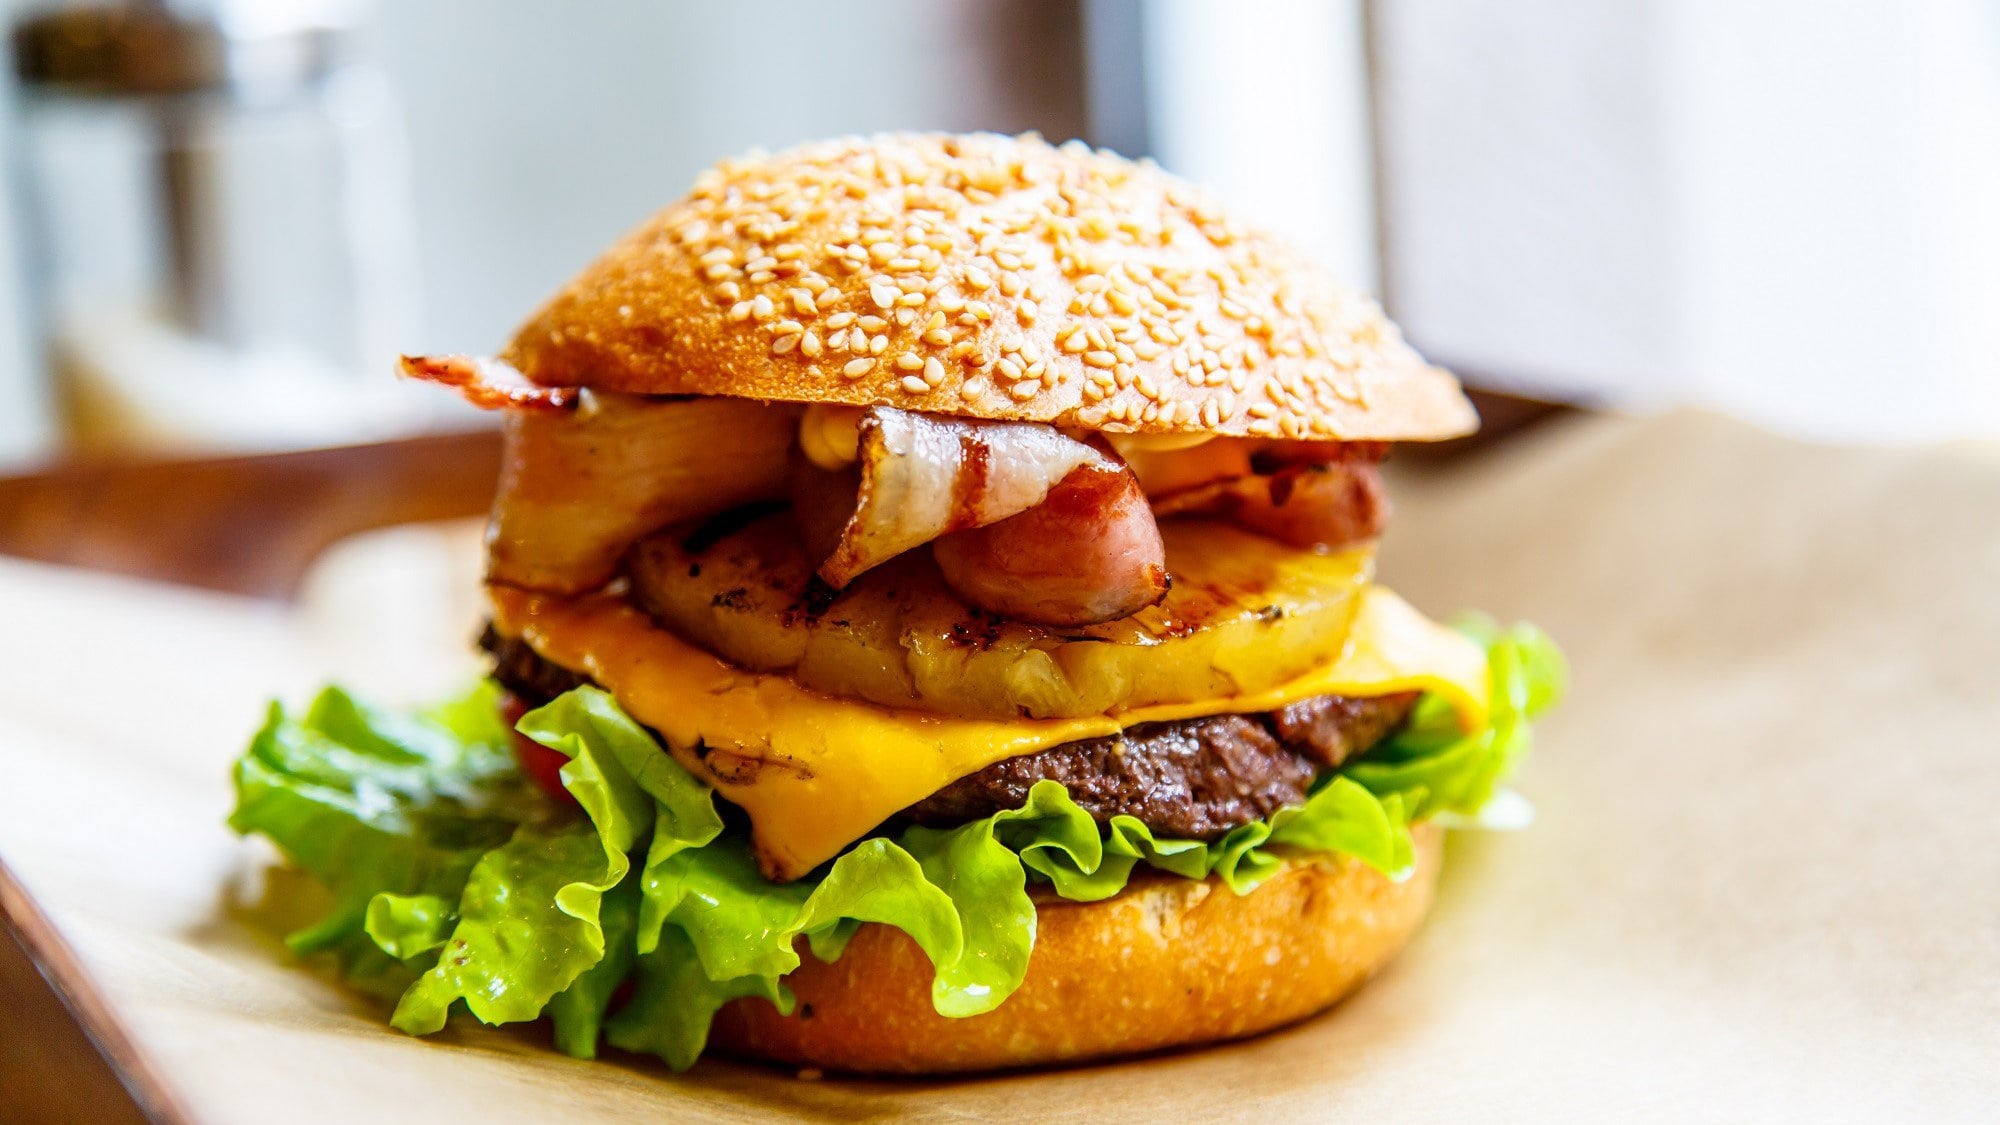 Big Kahuna Burger Pulp Fiction auf einer hellen Unterlage. Der Burger ist belegt mit Salat, Ananas, Bacon und Rindfleiscj.